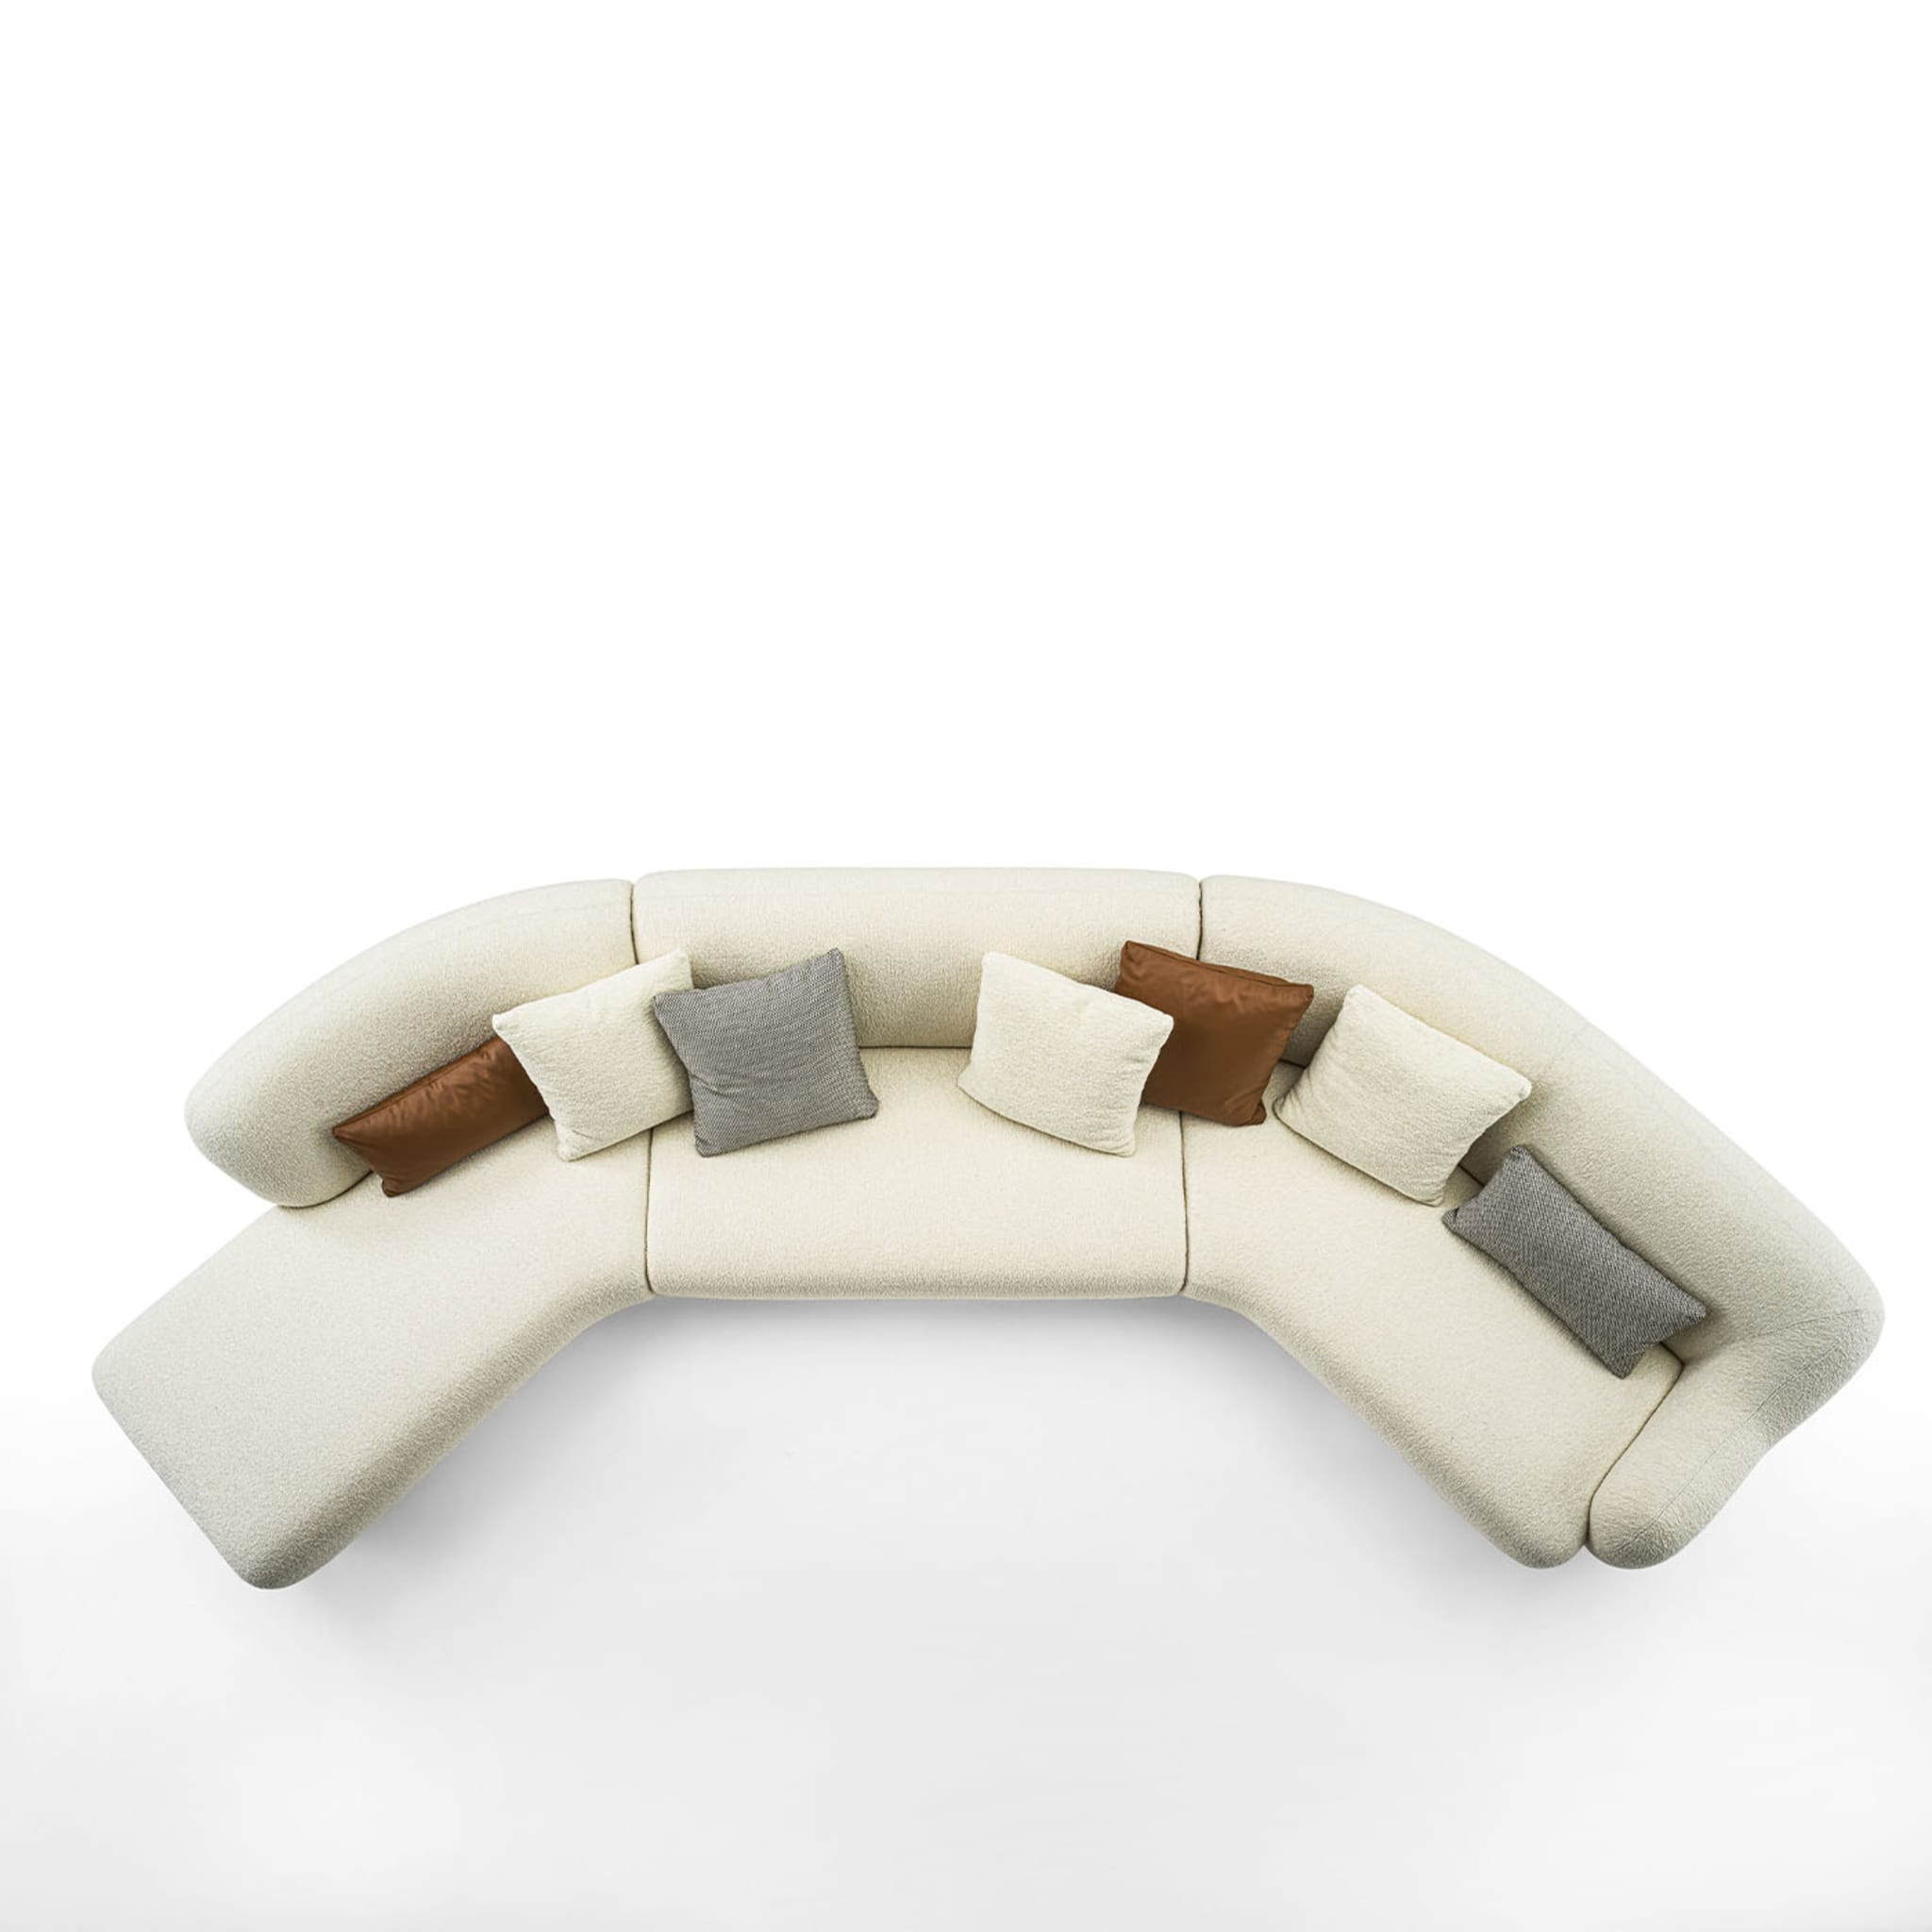 Nuvola White Modular Sofa - Alternative view 1